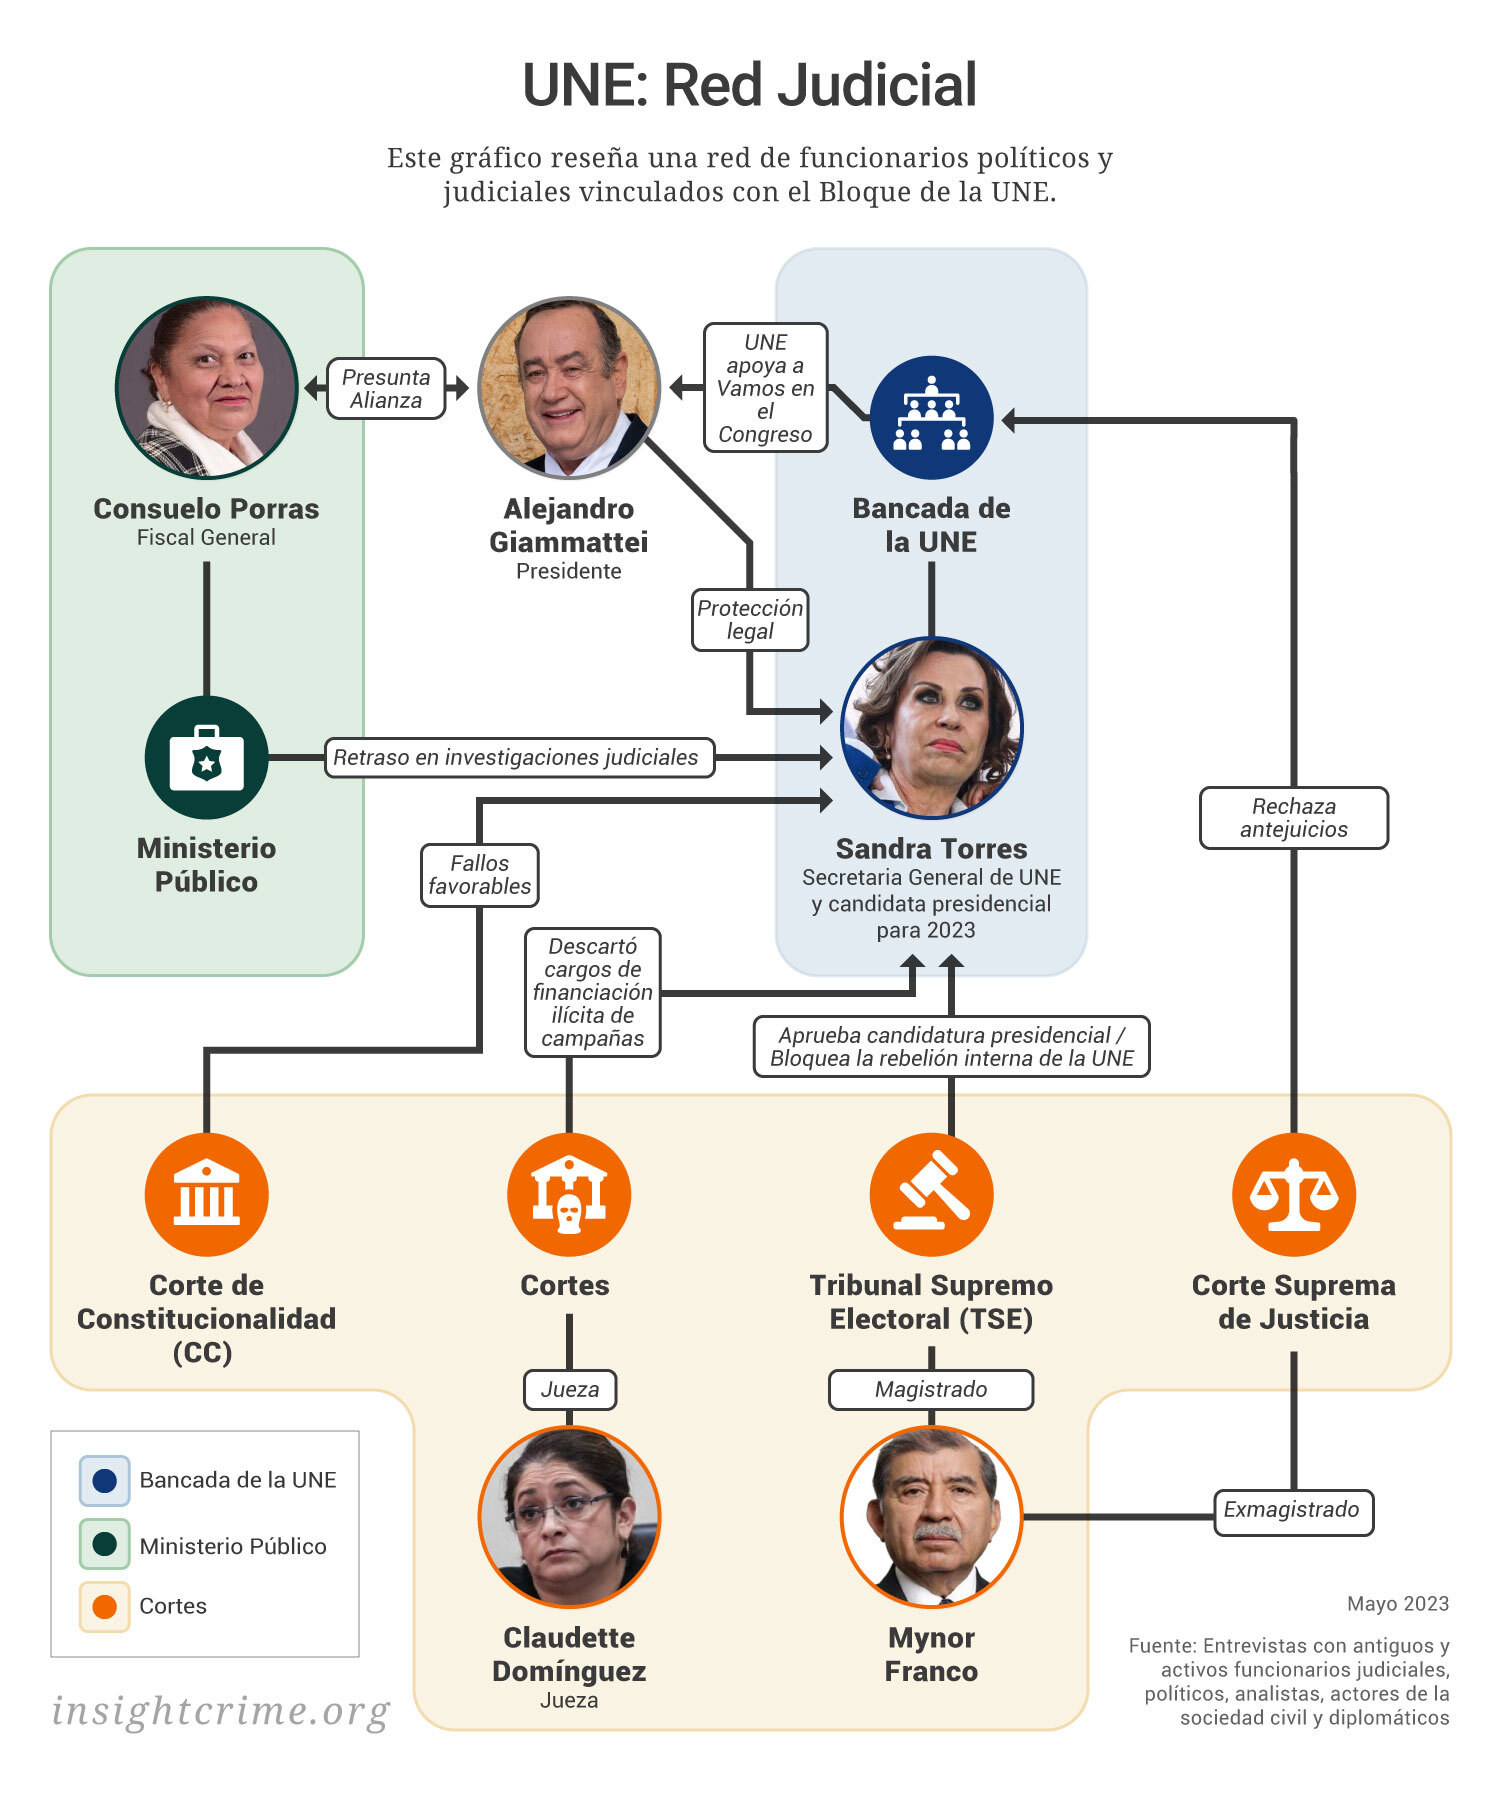 Este gráfico muestra la red de funcionarios políticos y judiciales vinculados al partido de Unidad Nacional de la Esperanza (UNE) en Guatemala.